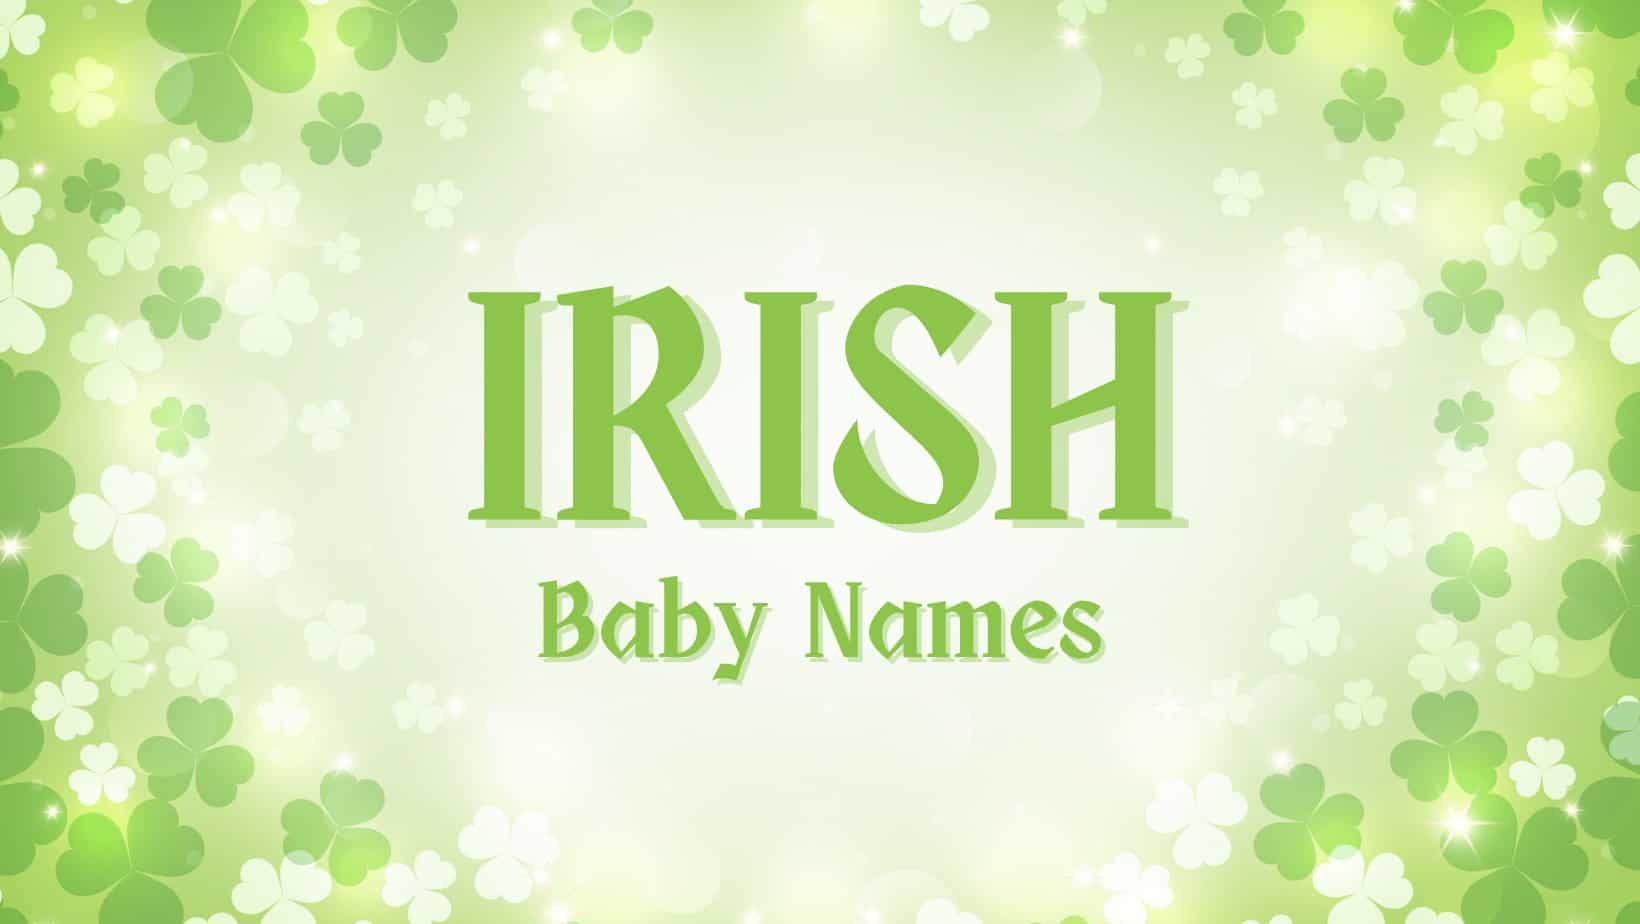 Irish Baby Names